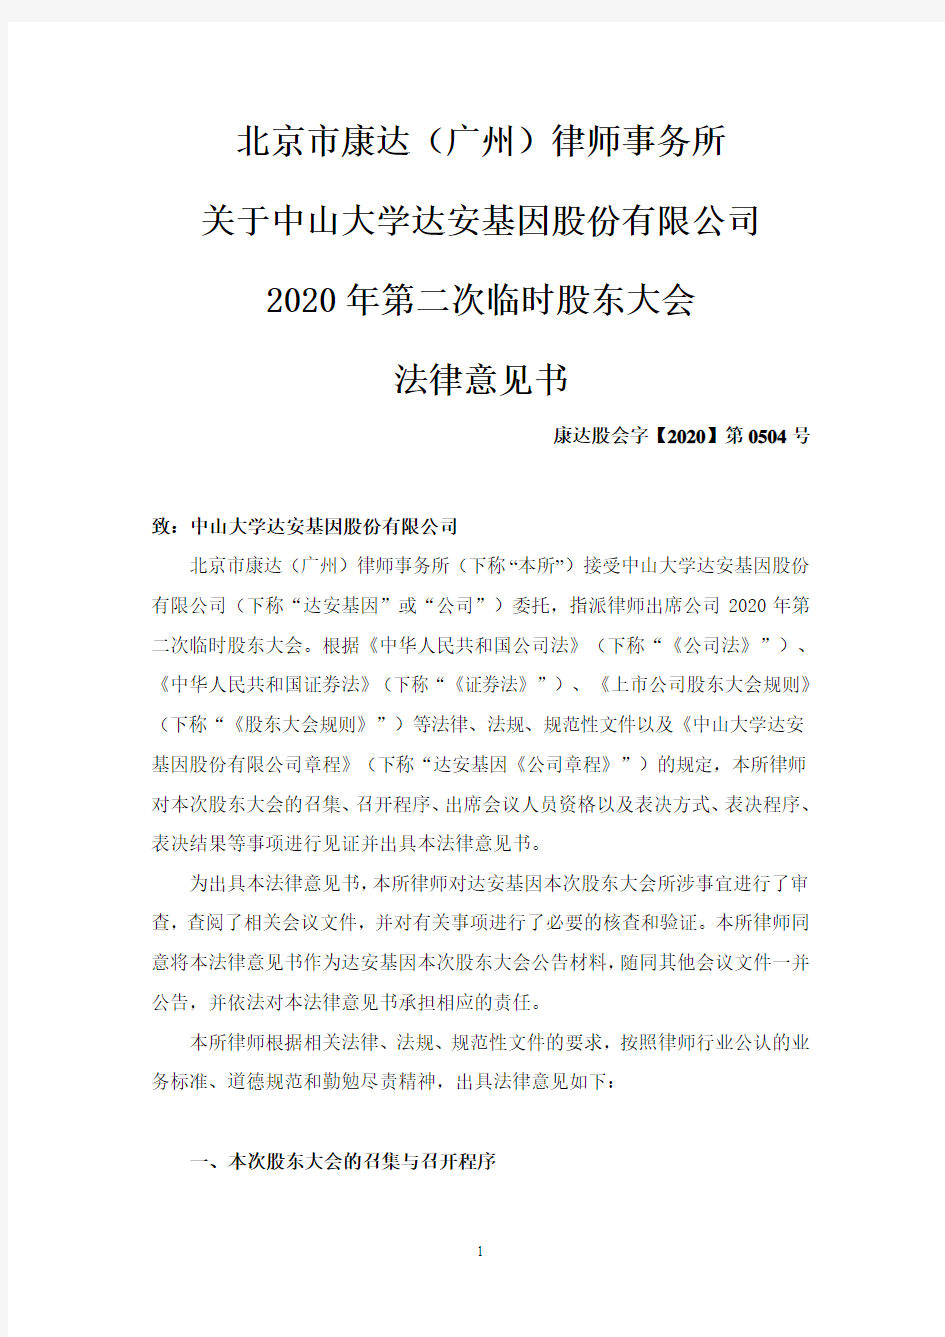 北京市康达(广州)律师事务所关于中山大学达安基因股份有